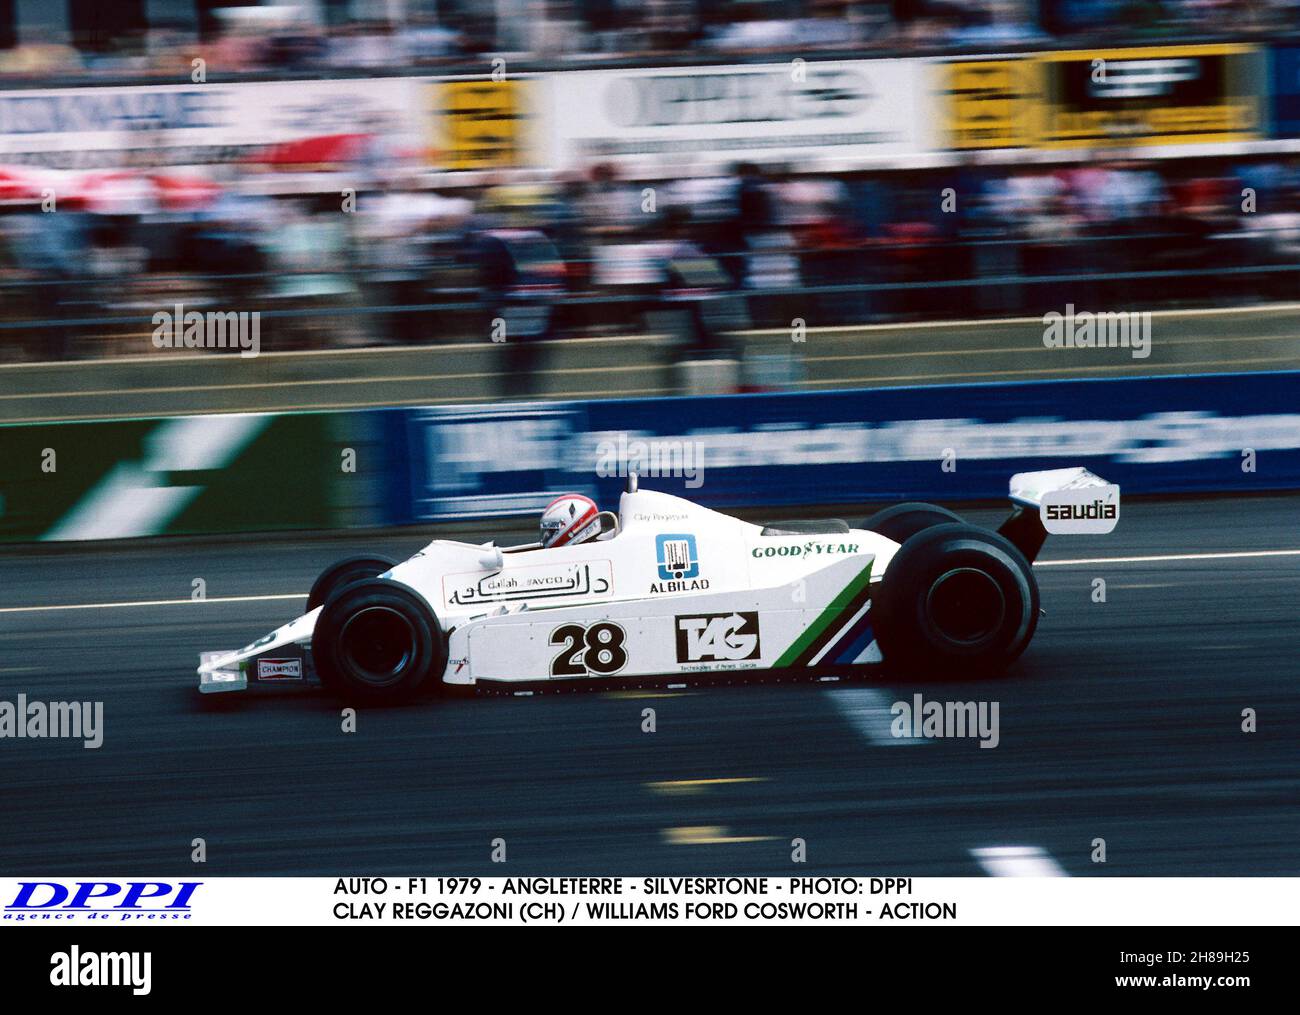 AUTO - F1 1979 - ANGLETERRE - SILVESRTONE - PHOTO: DPPI CLAY REGGAZONI (CH) / WILLIAMS FORD COSWORTH - ACTION - Photo: Dppi/DPPI/LiveMedia Stock Photo